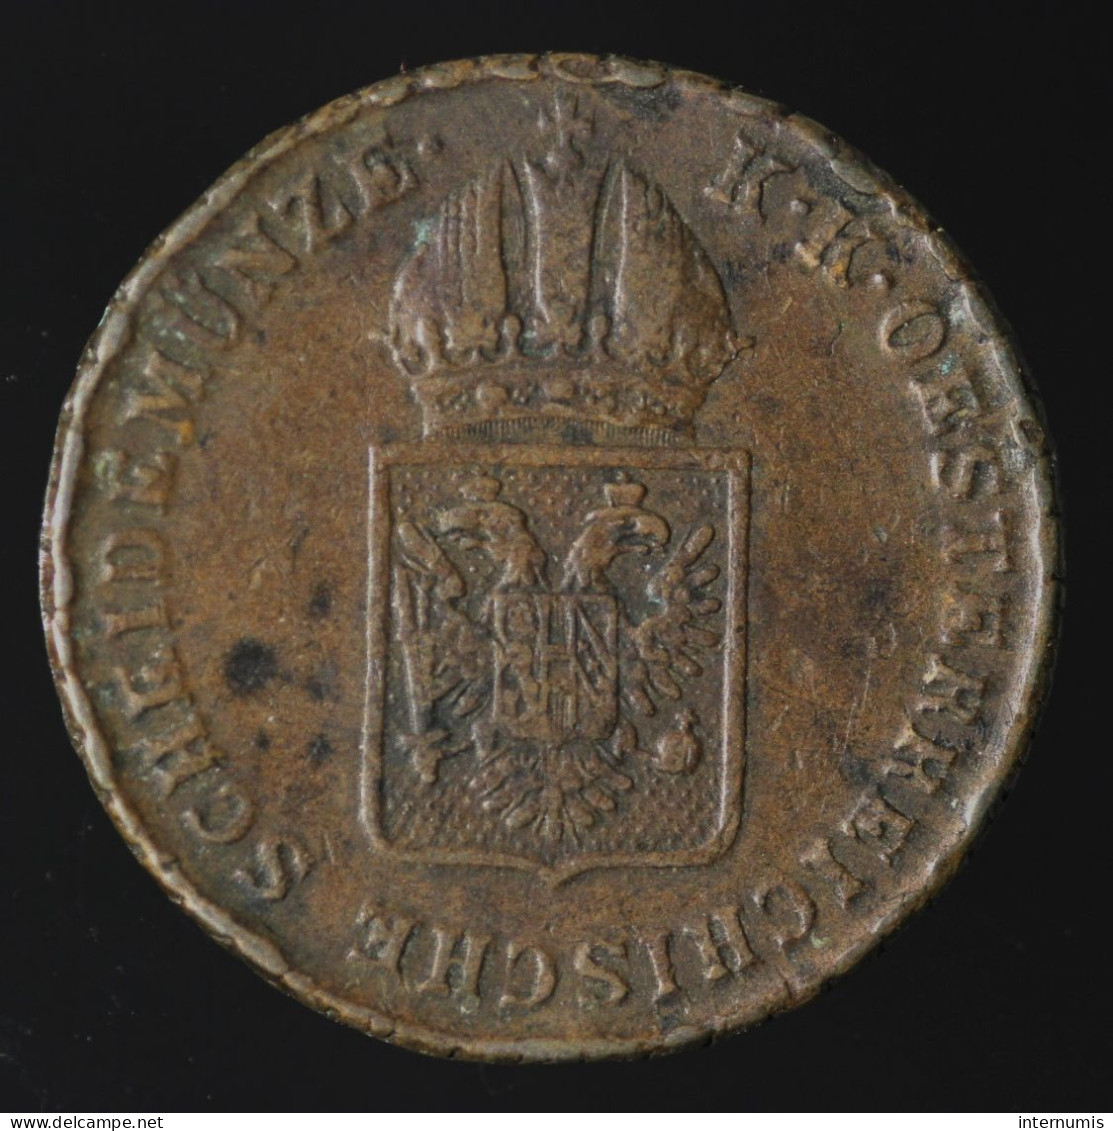  Autriche / Austria, Franz I, 1 Kreuzer, 1816, Vienna, Cuivre (Copper), TTB (EF),
KM#2113 - Autriche